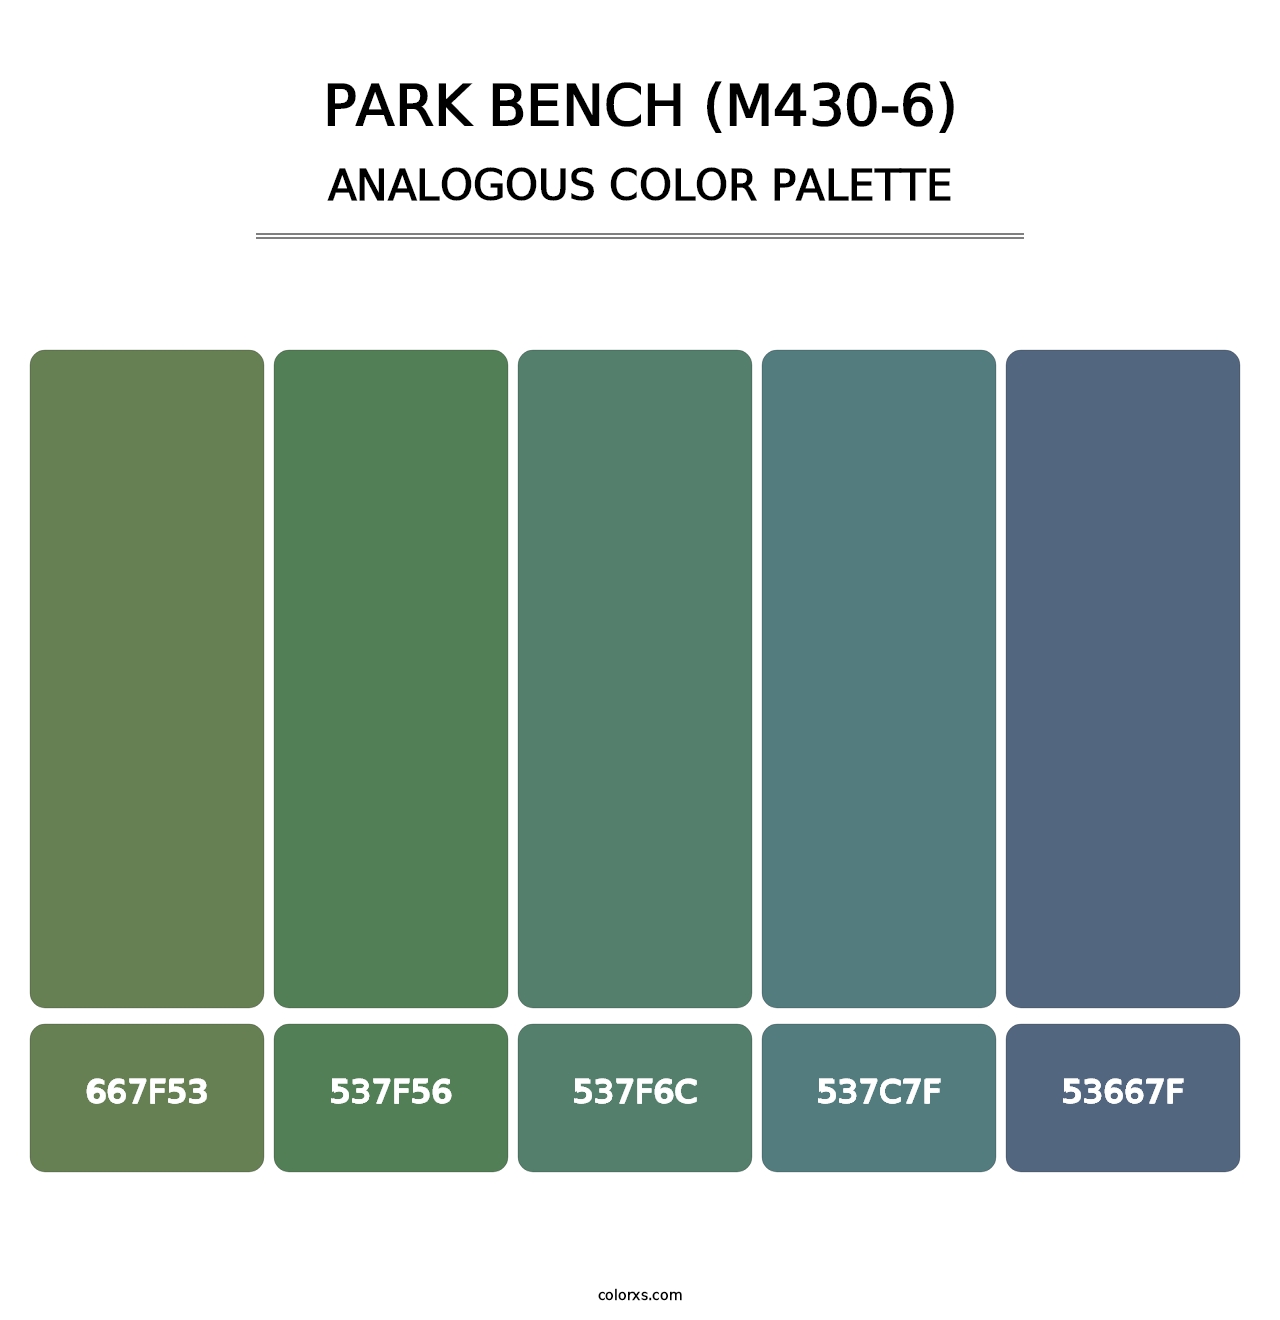 Park Bench (M430-6) - Analogous Color Palette